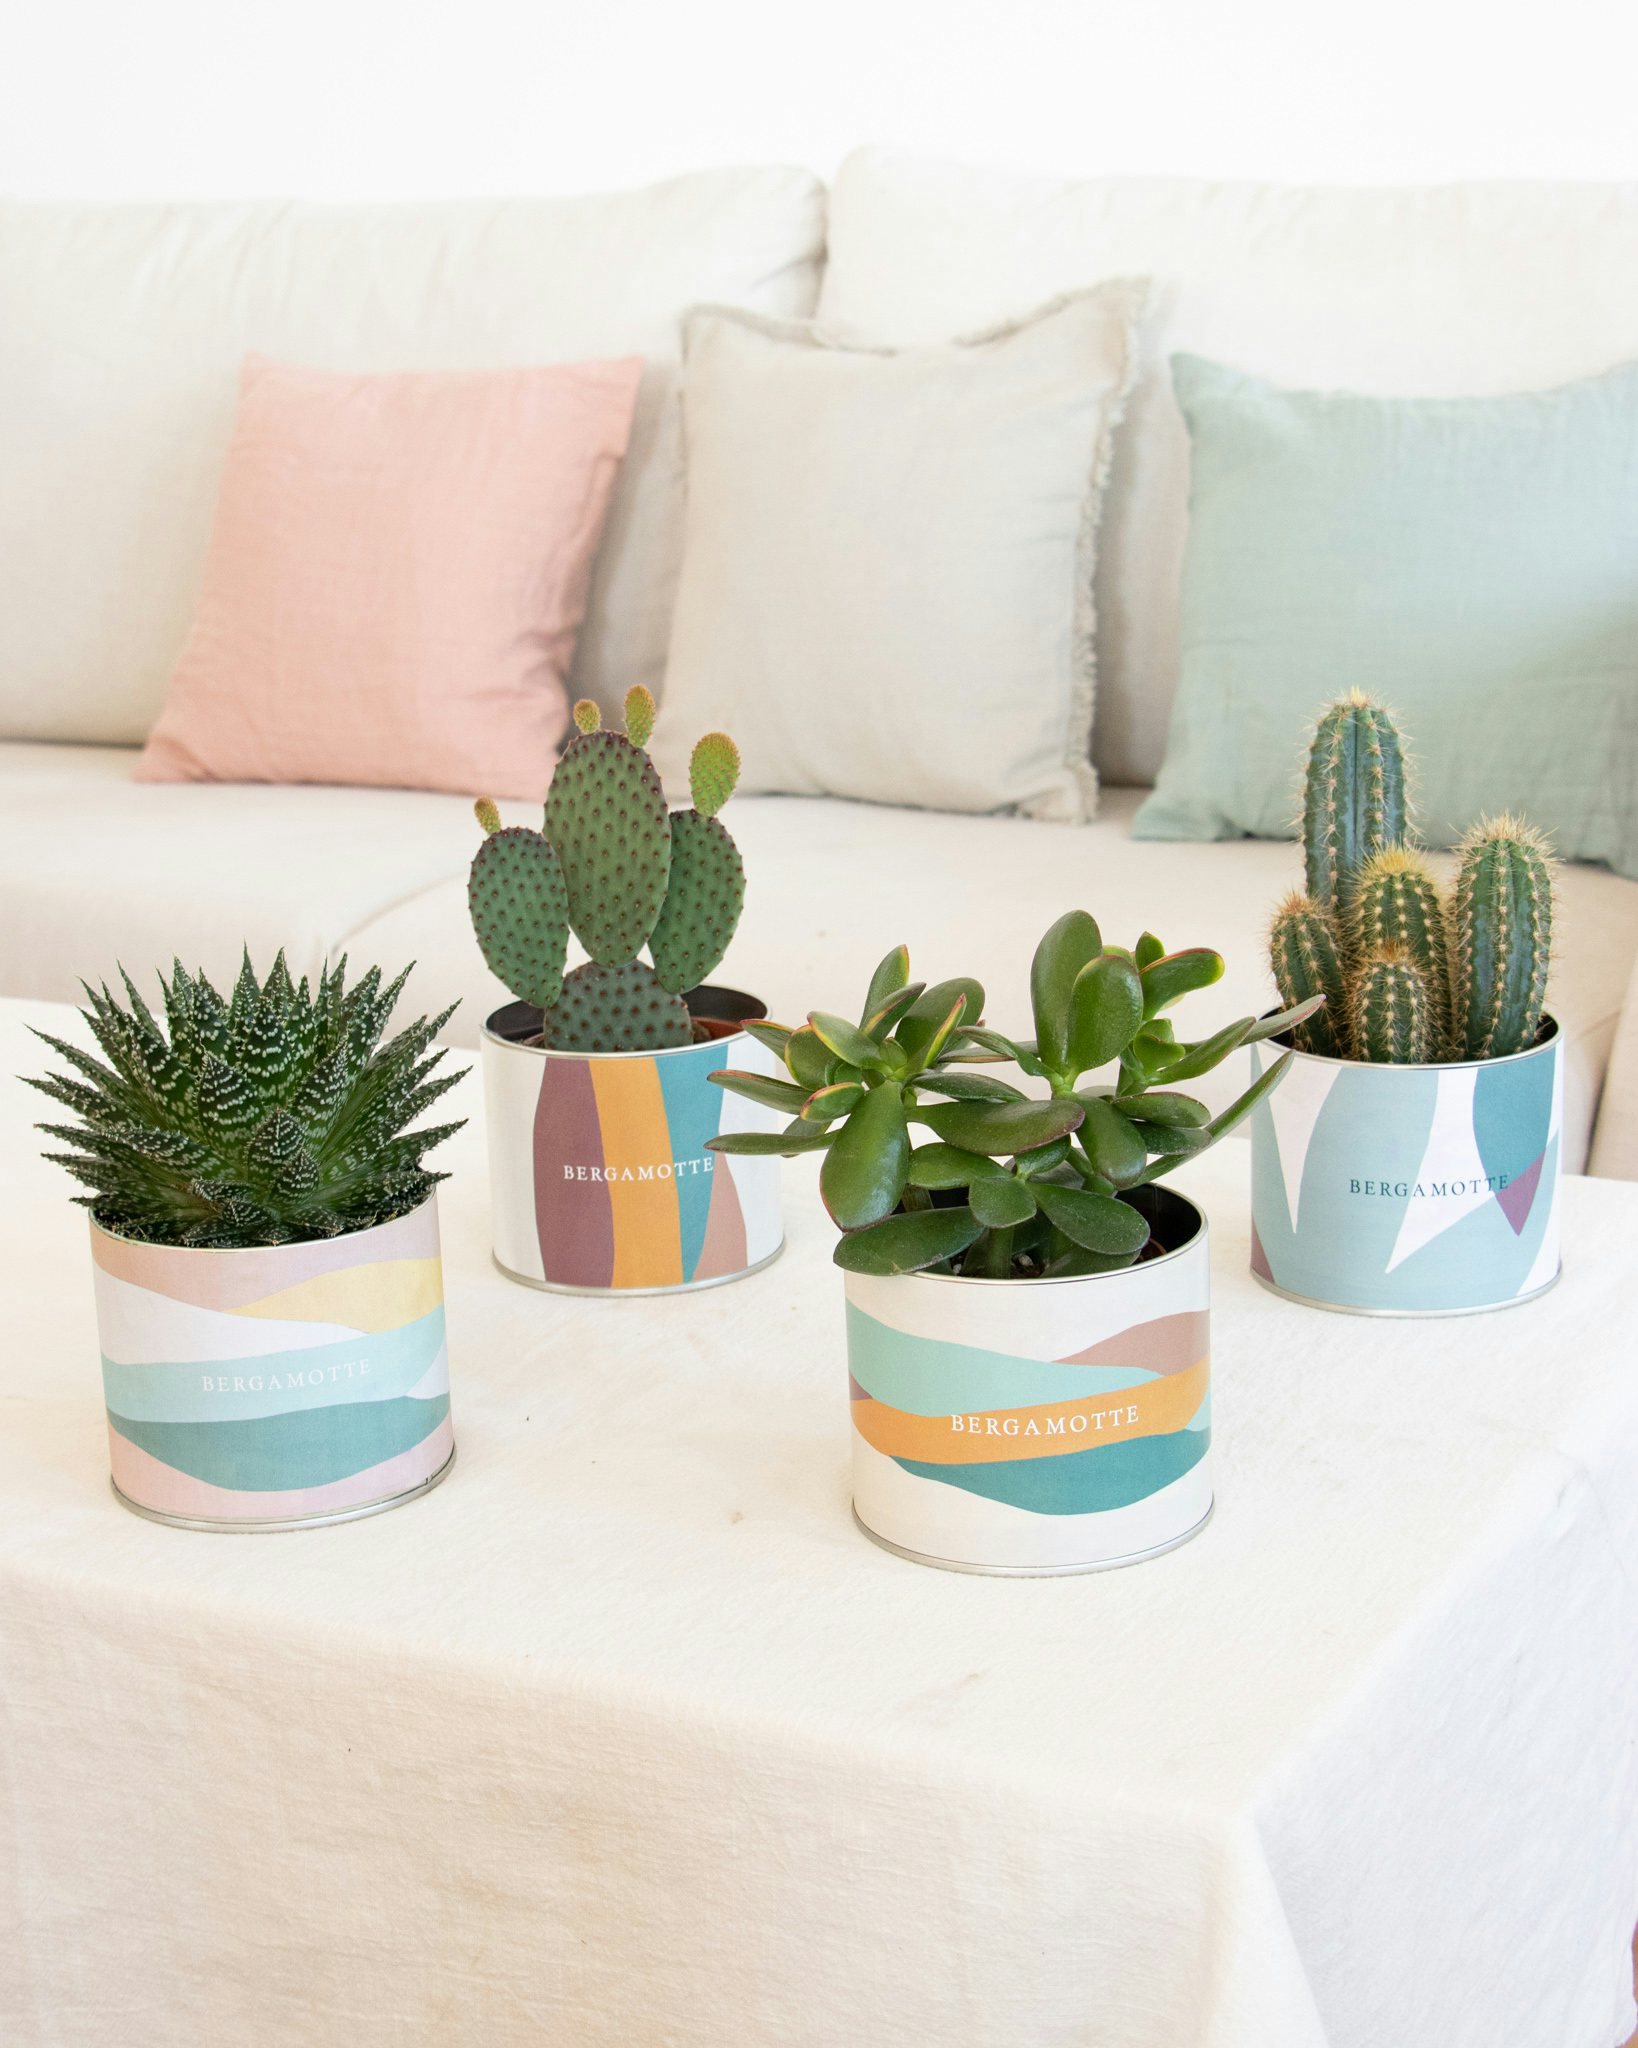 Oscar - Cactus et ses cache-pots Bergamotte